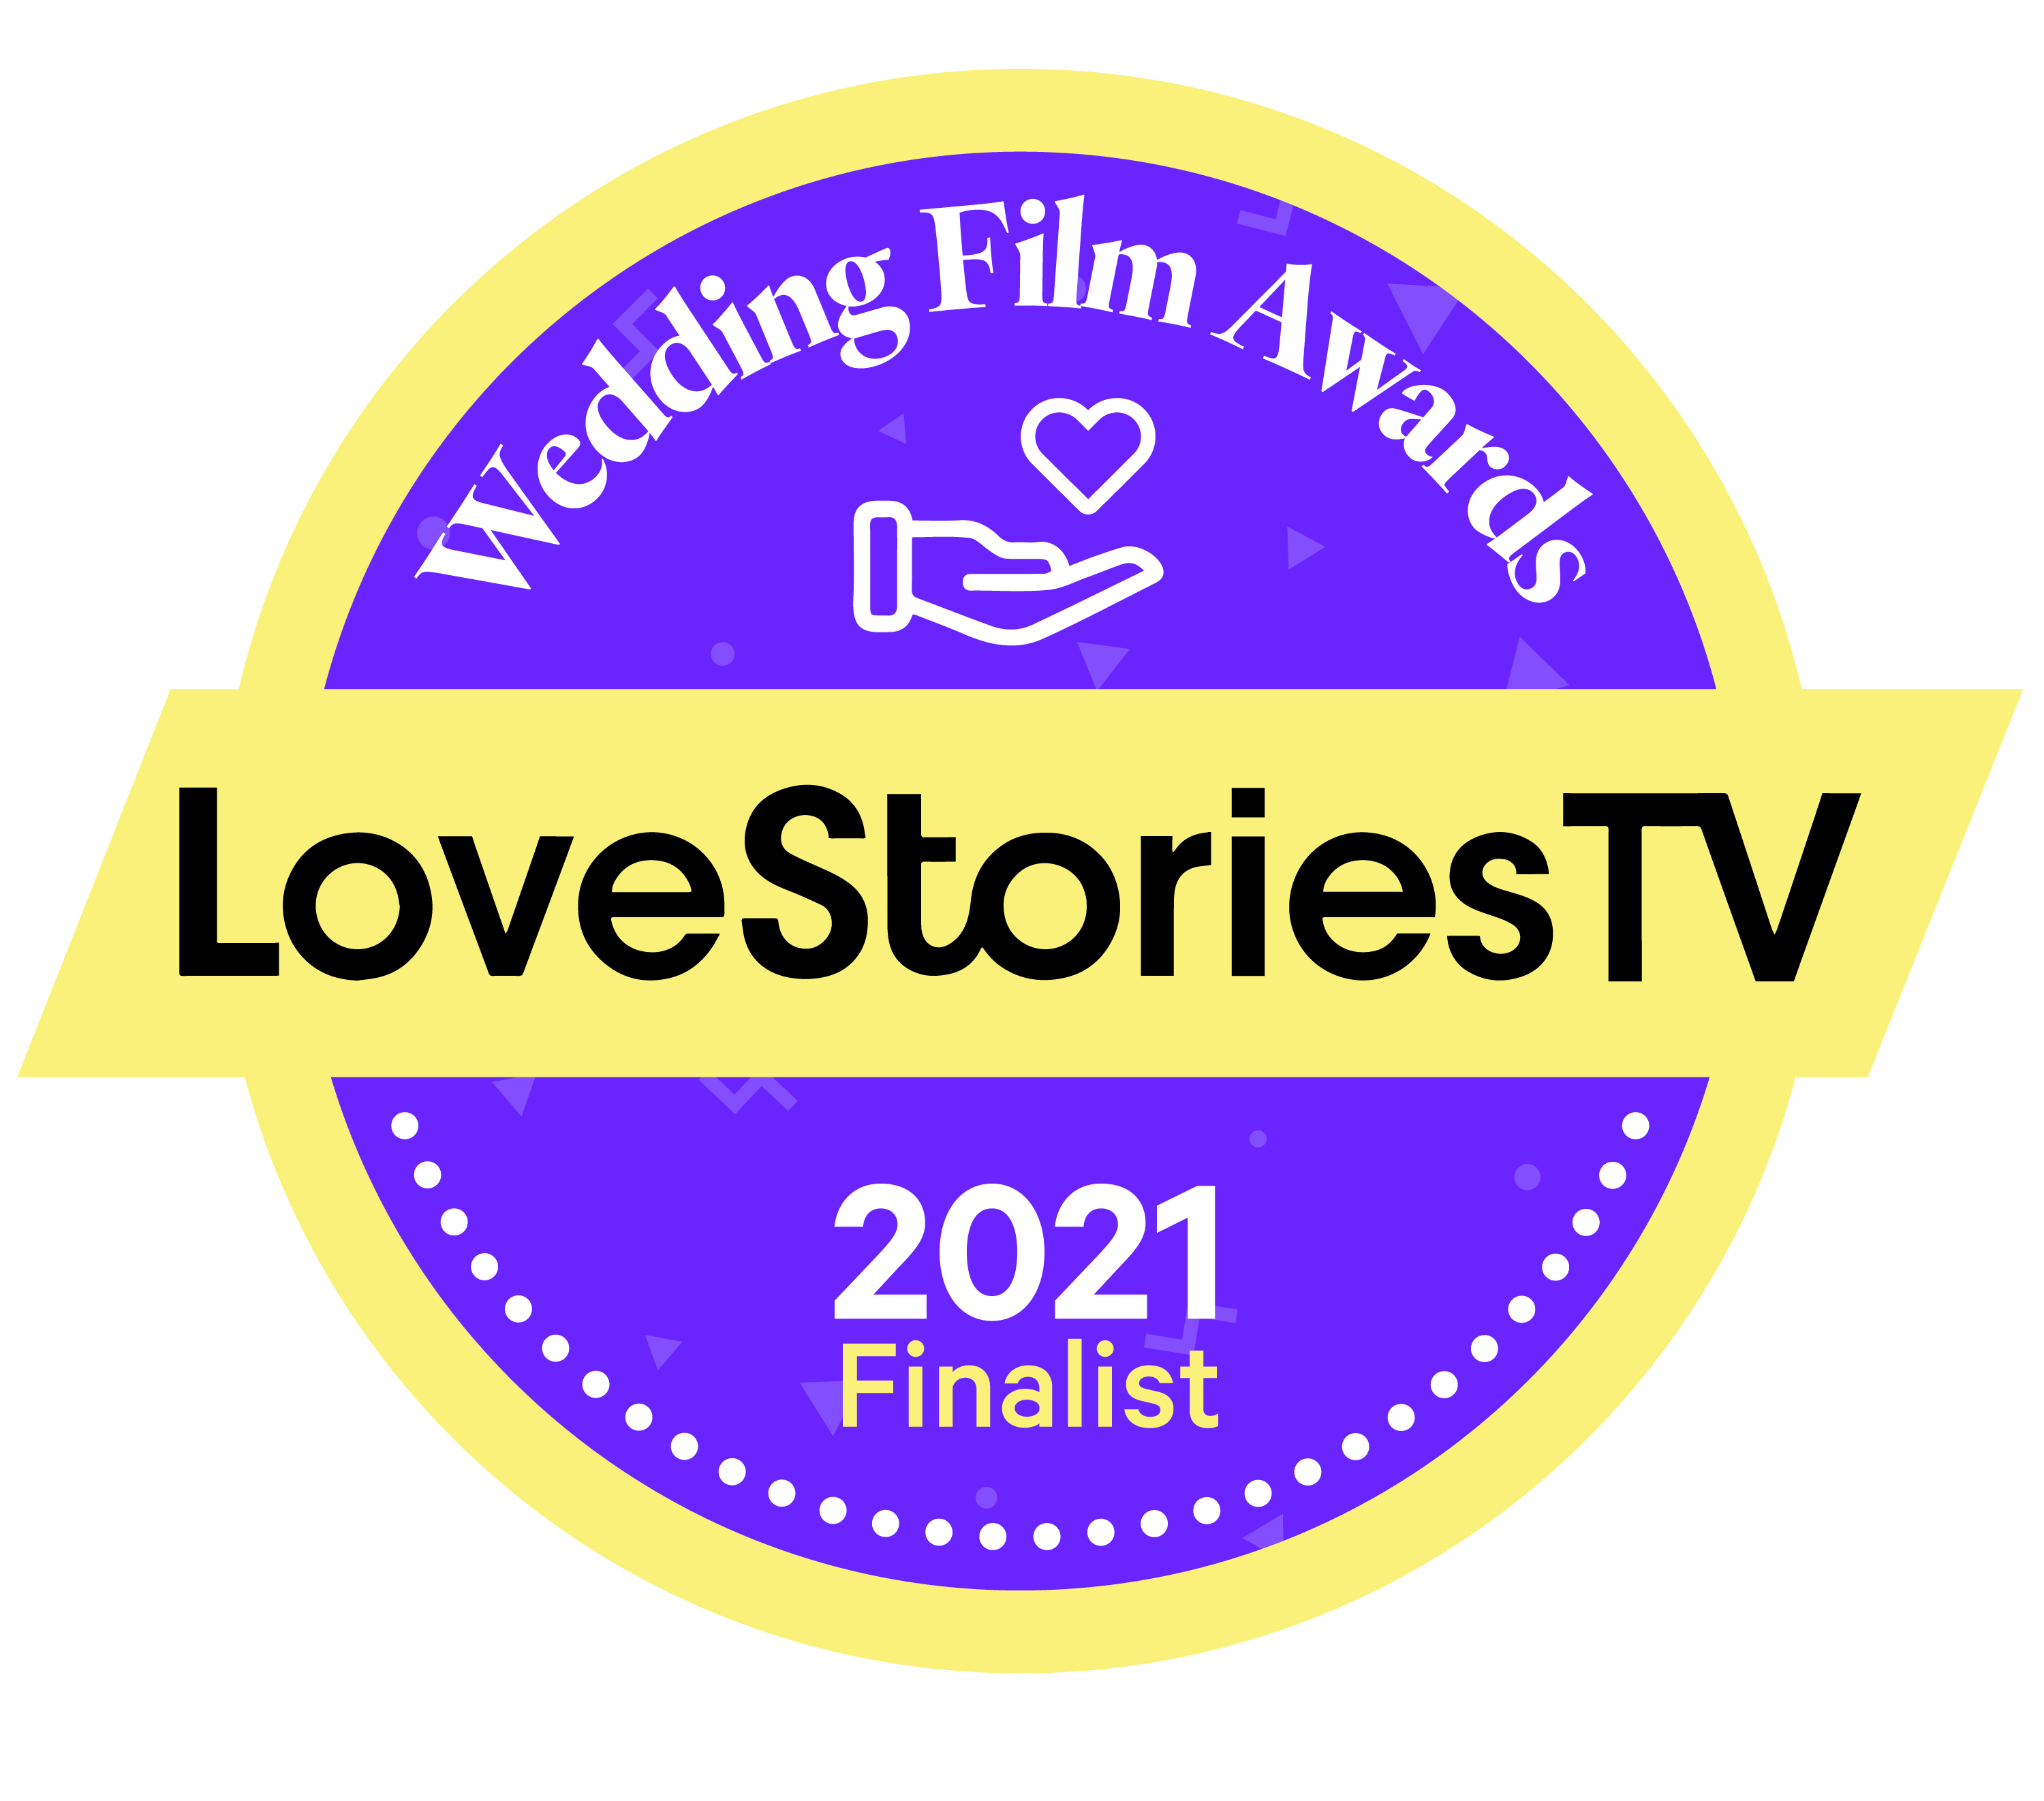 Finalist in world’s wedding film AWARDS